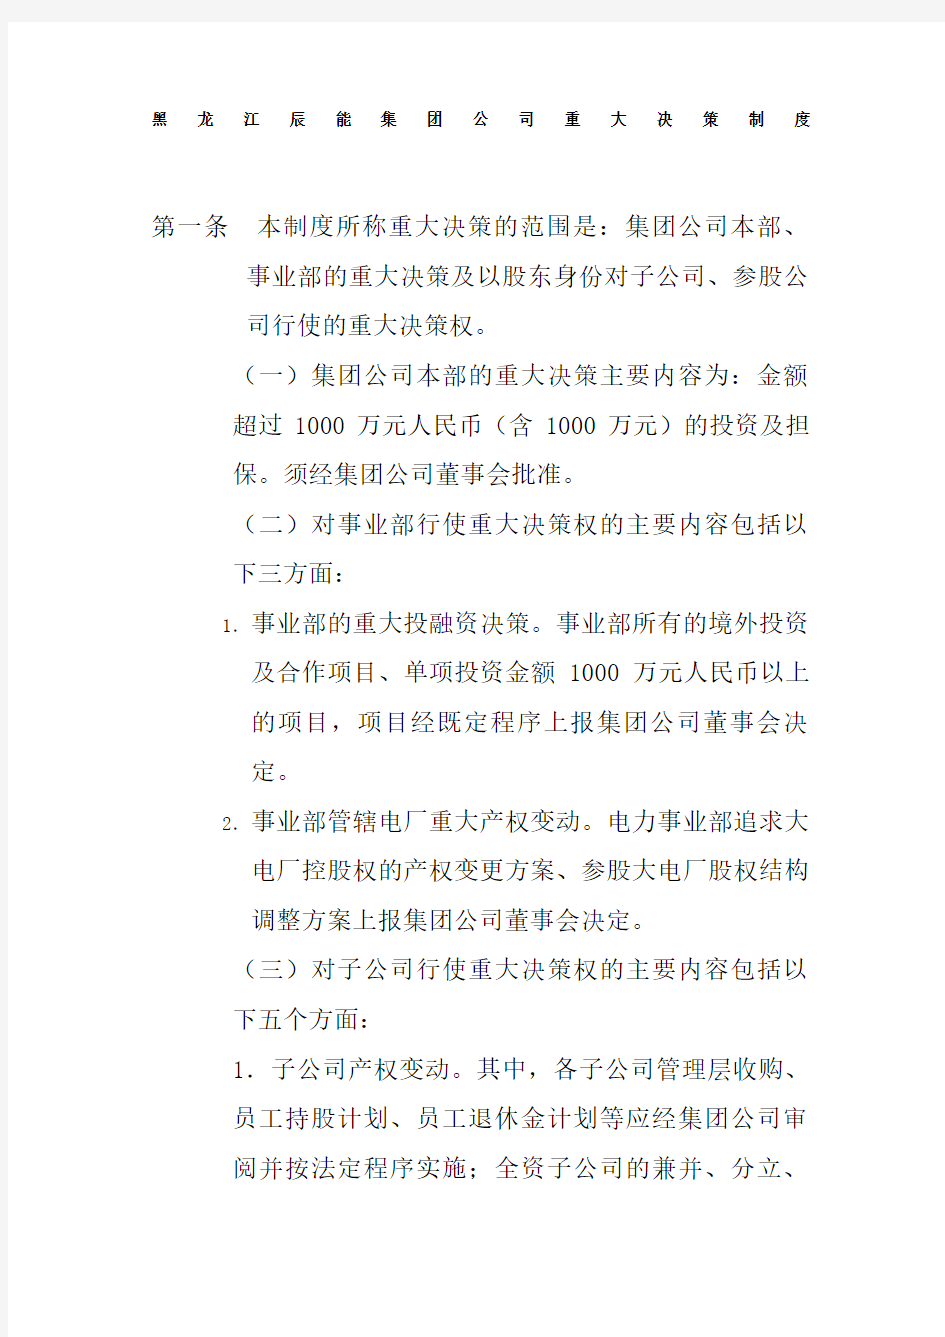 黑龙江辰能集团公司重大决策制度精编